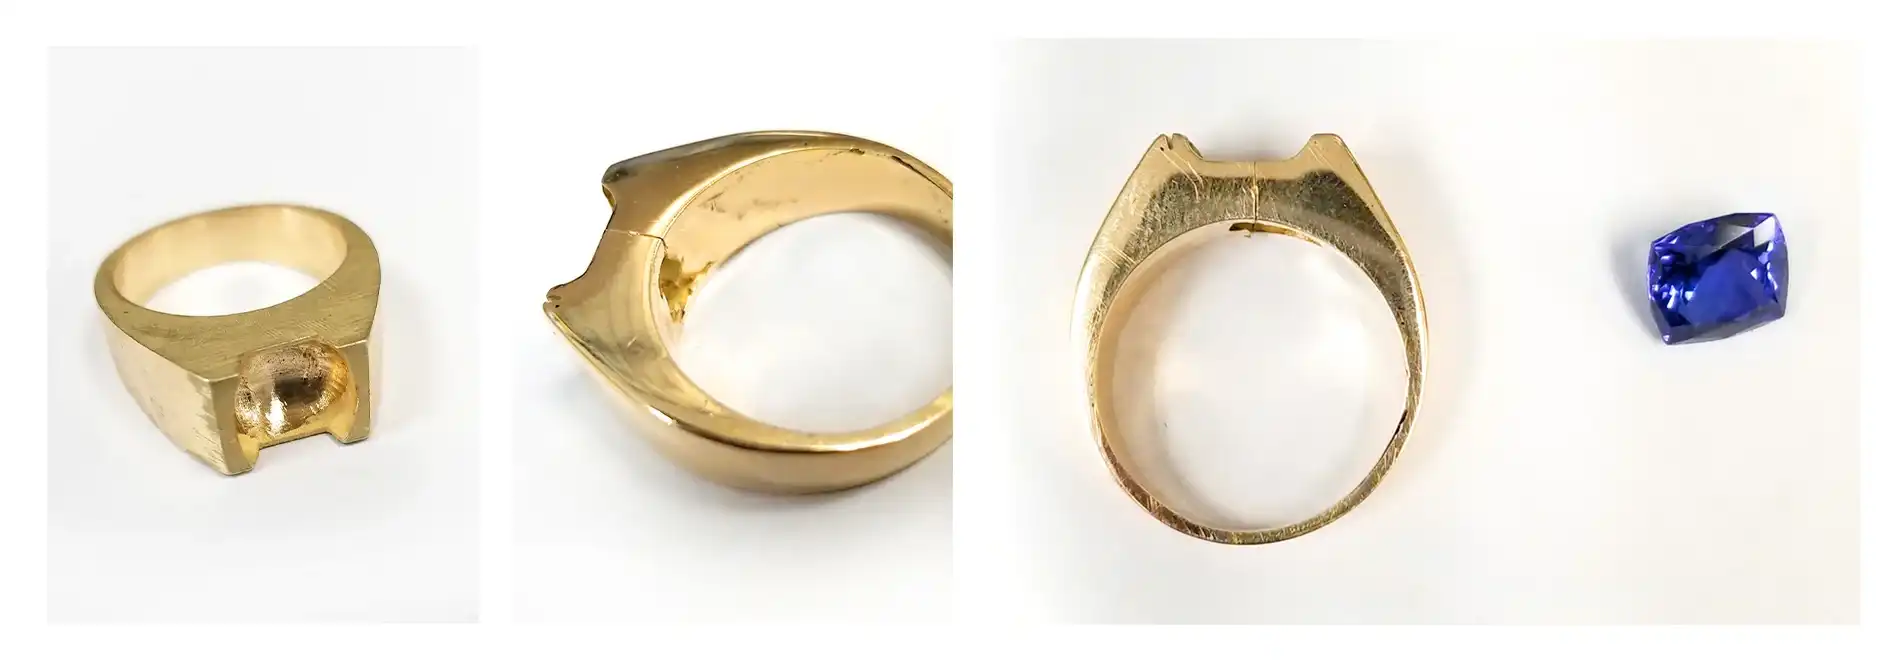 mens gold ring repair and soldering